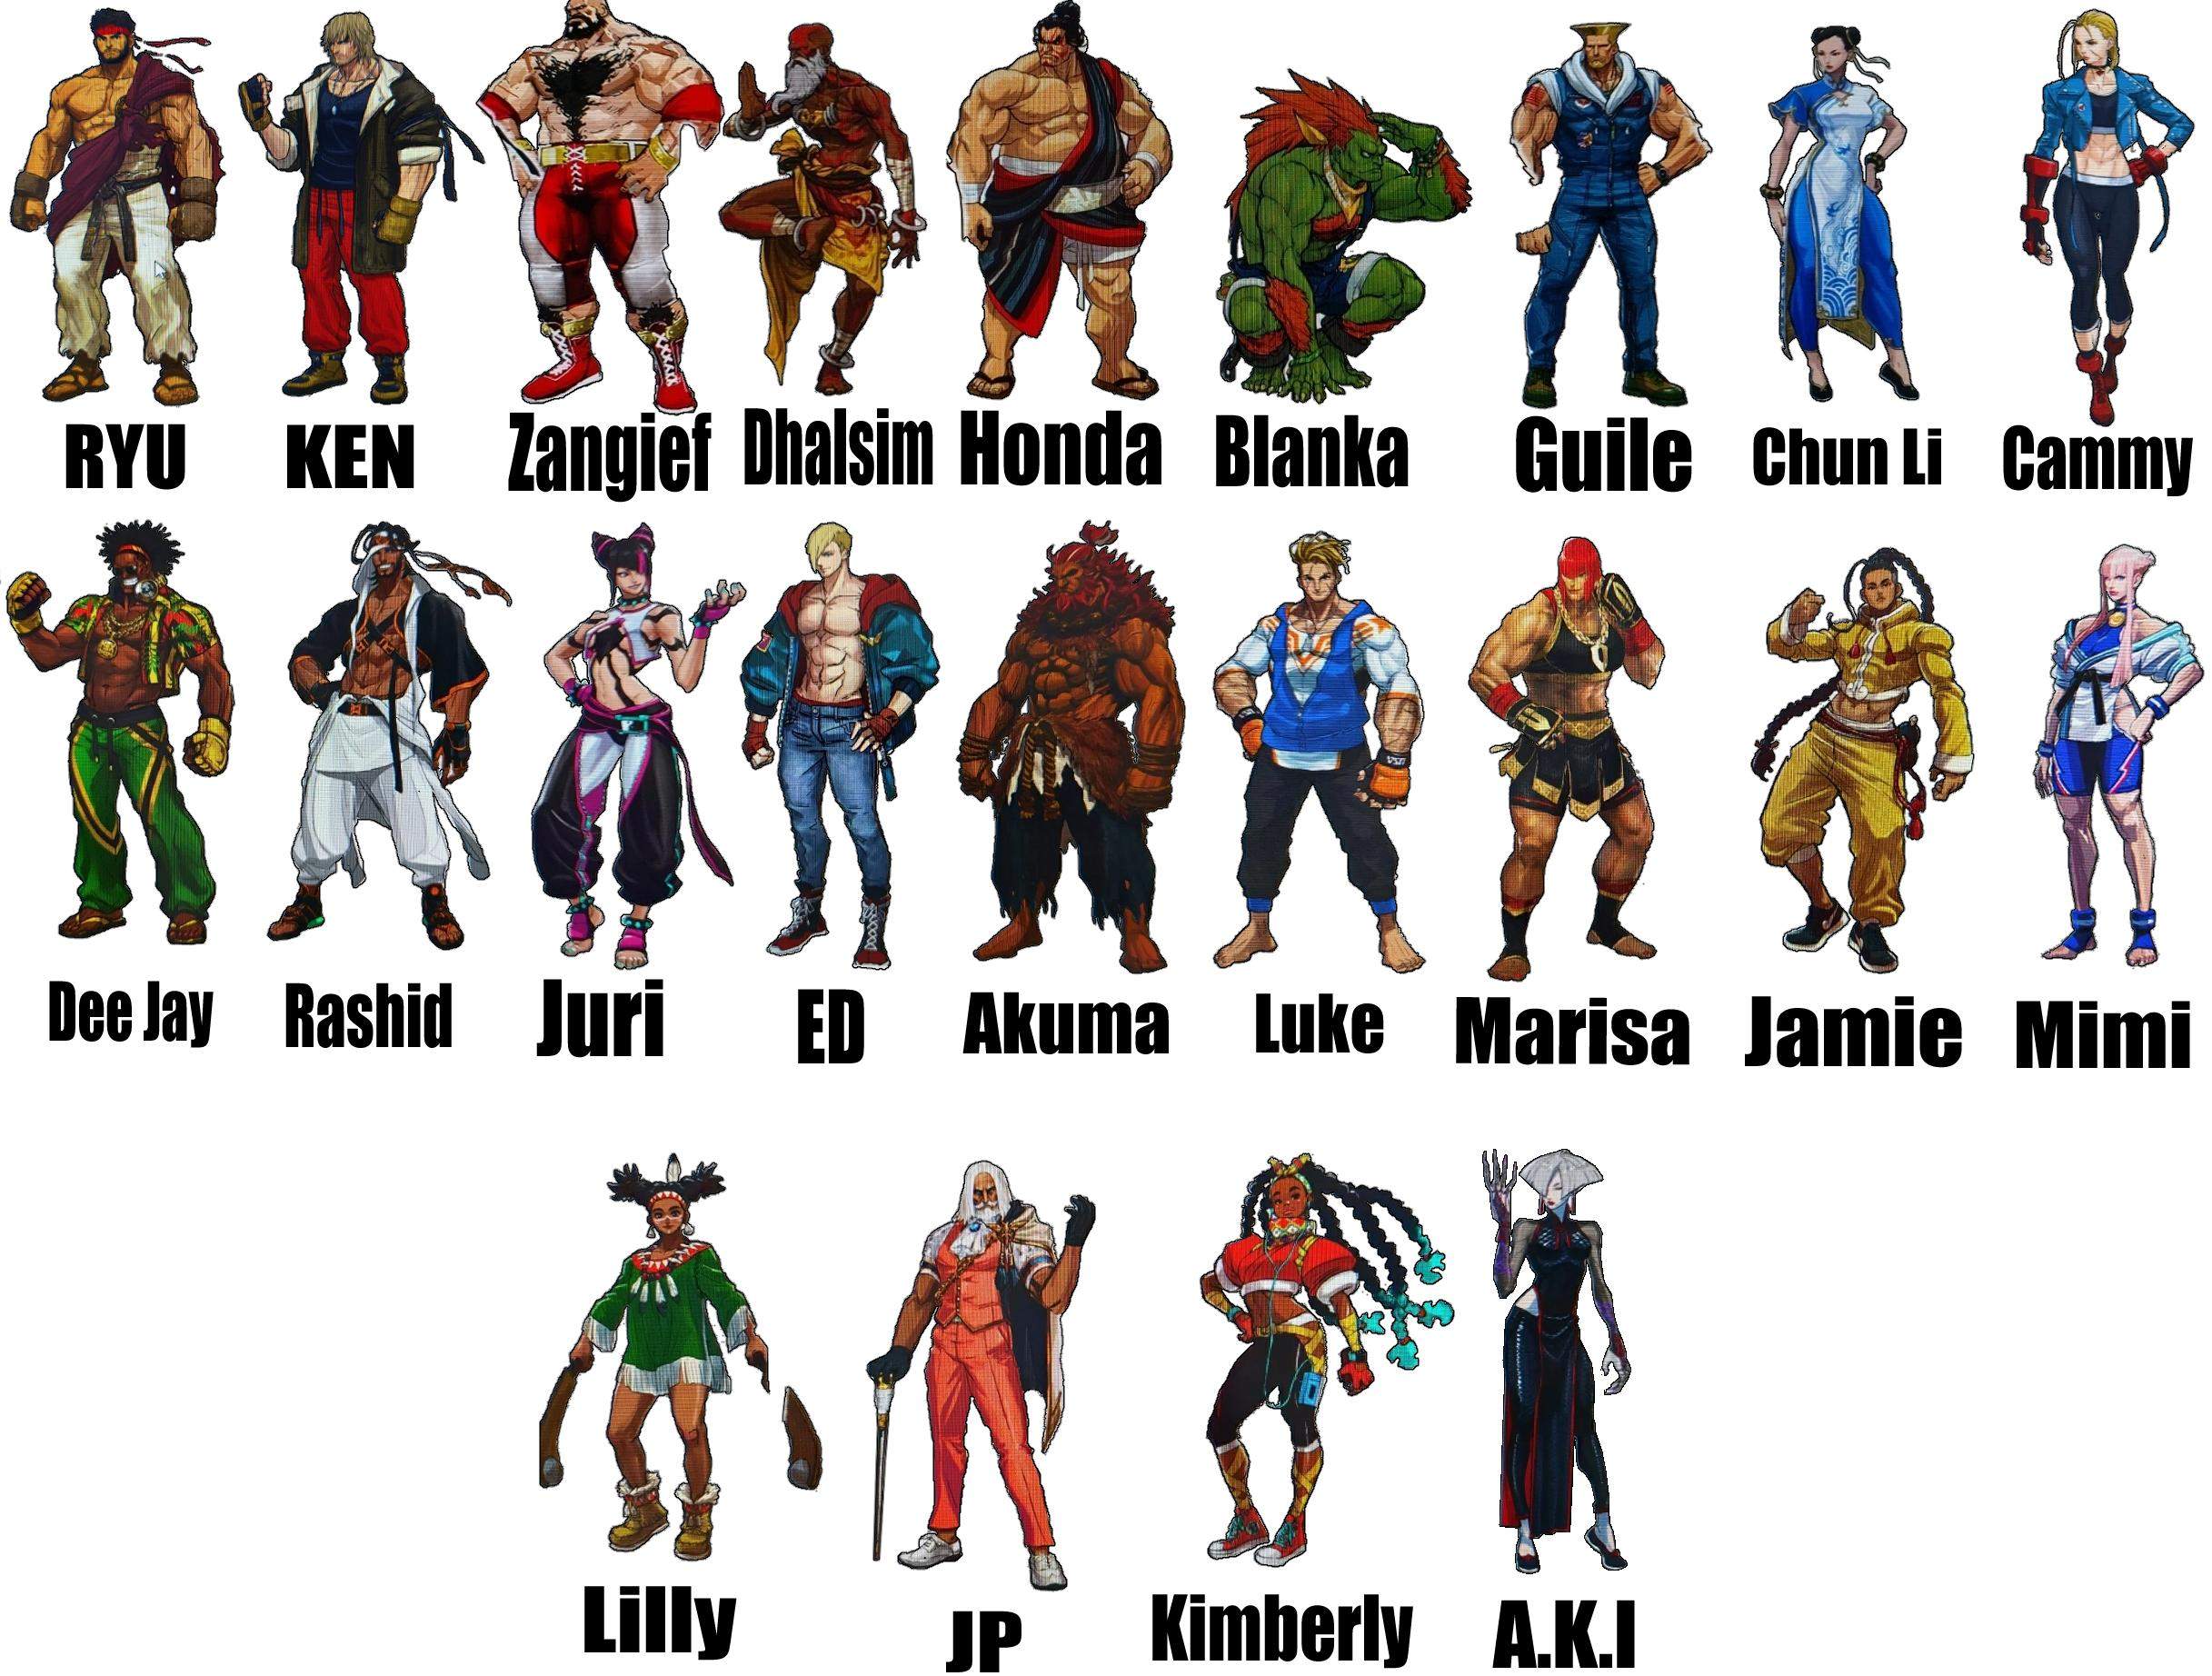 Street Fighter 6: vazamento mostra possíveis personagens